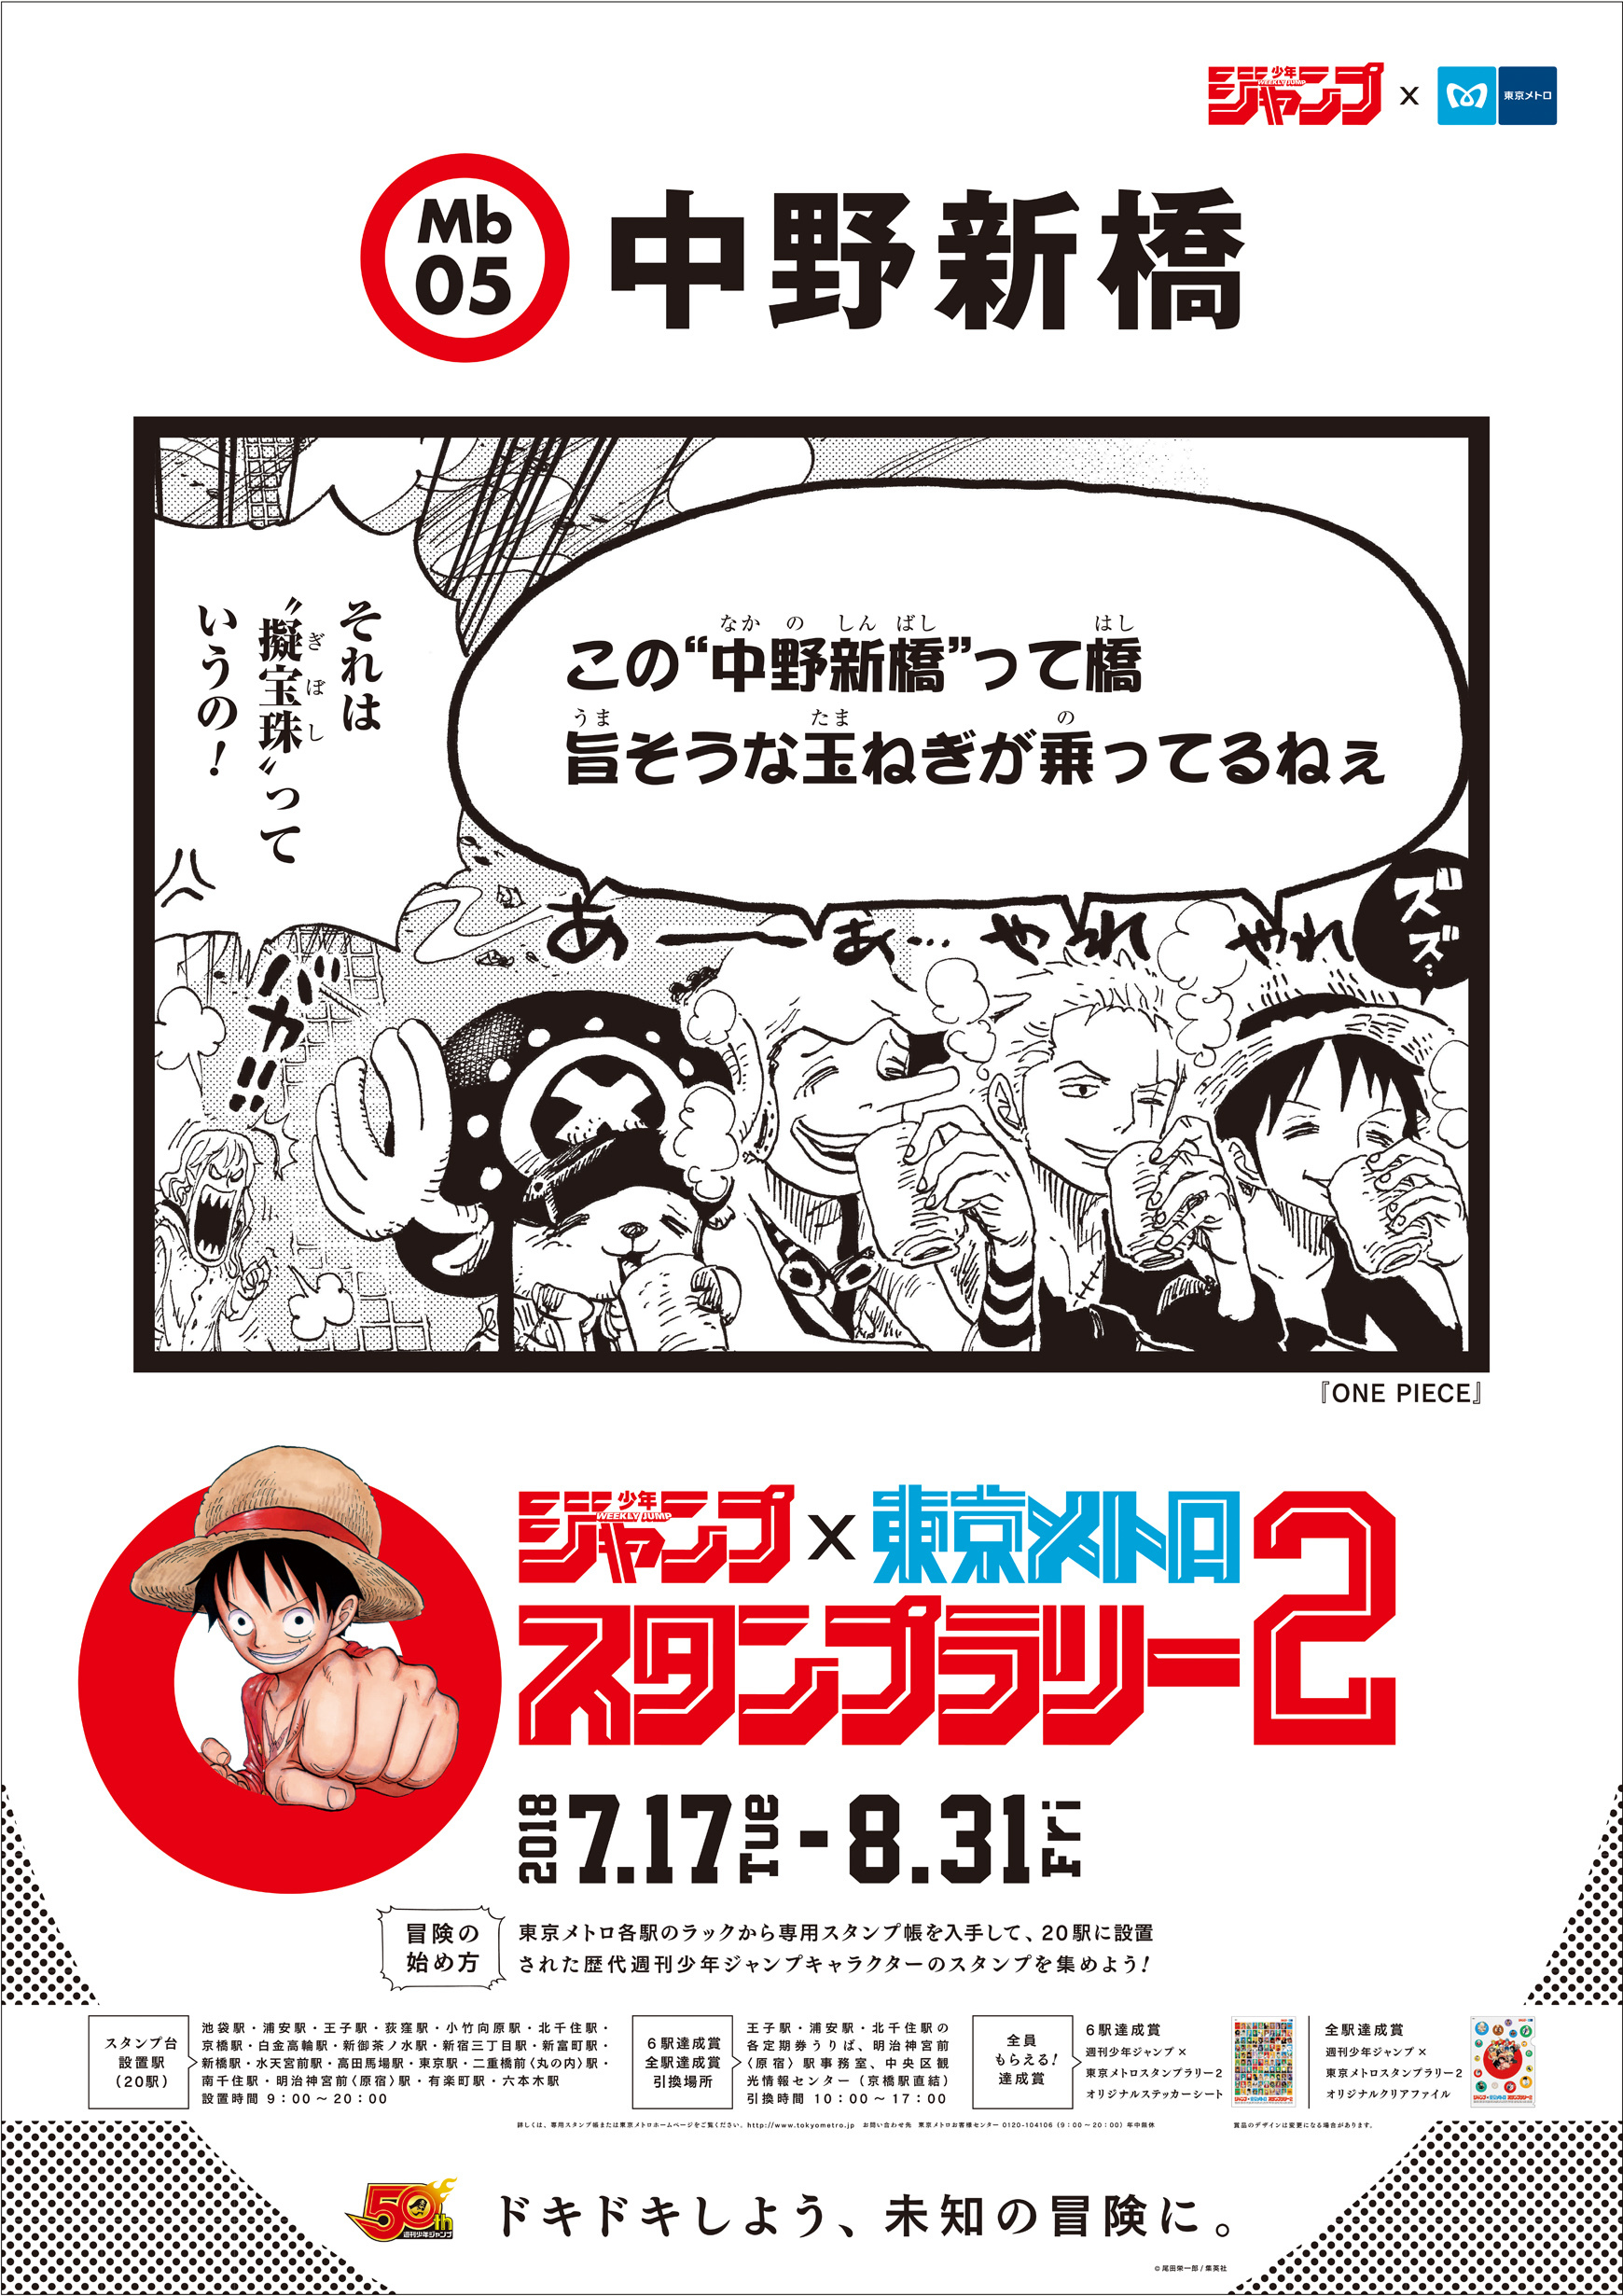 画像 今年の夏も 週刊少年ジャンプ 東京メトロスタンプラリー2 開催決定 の画像2 10 Spice エンタメ特化型情報メディア スパイス